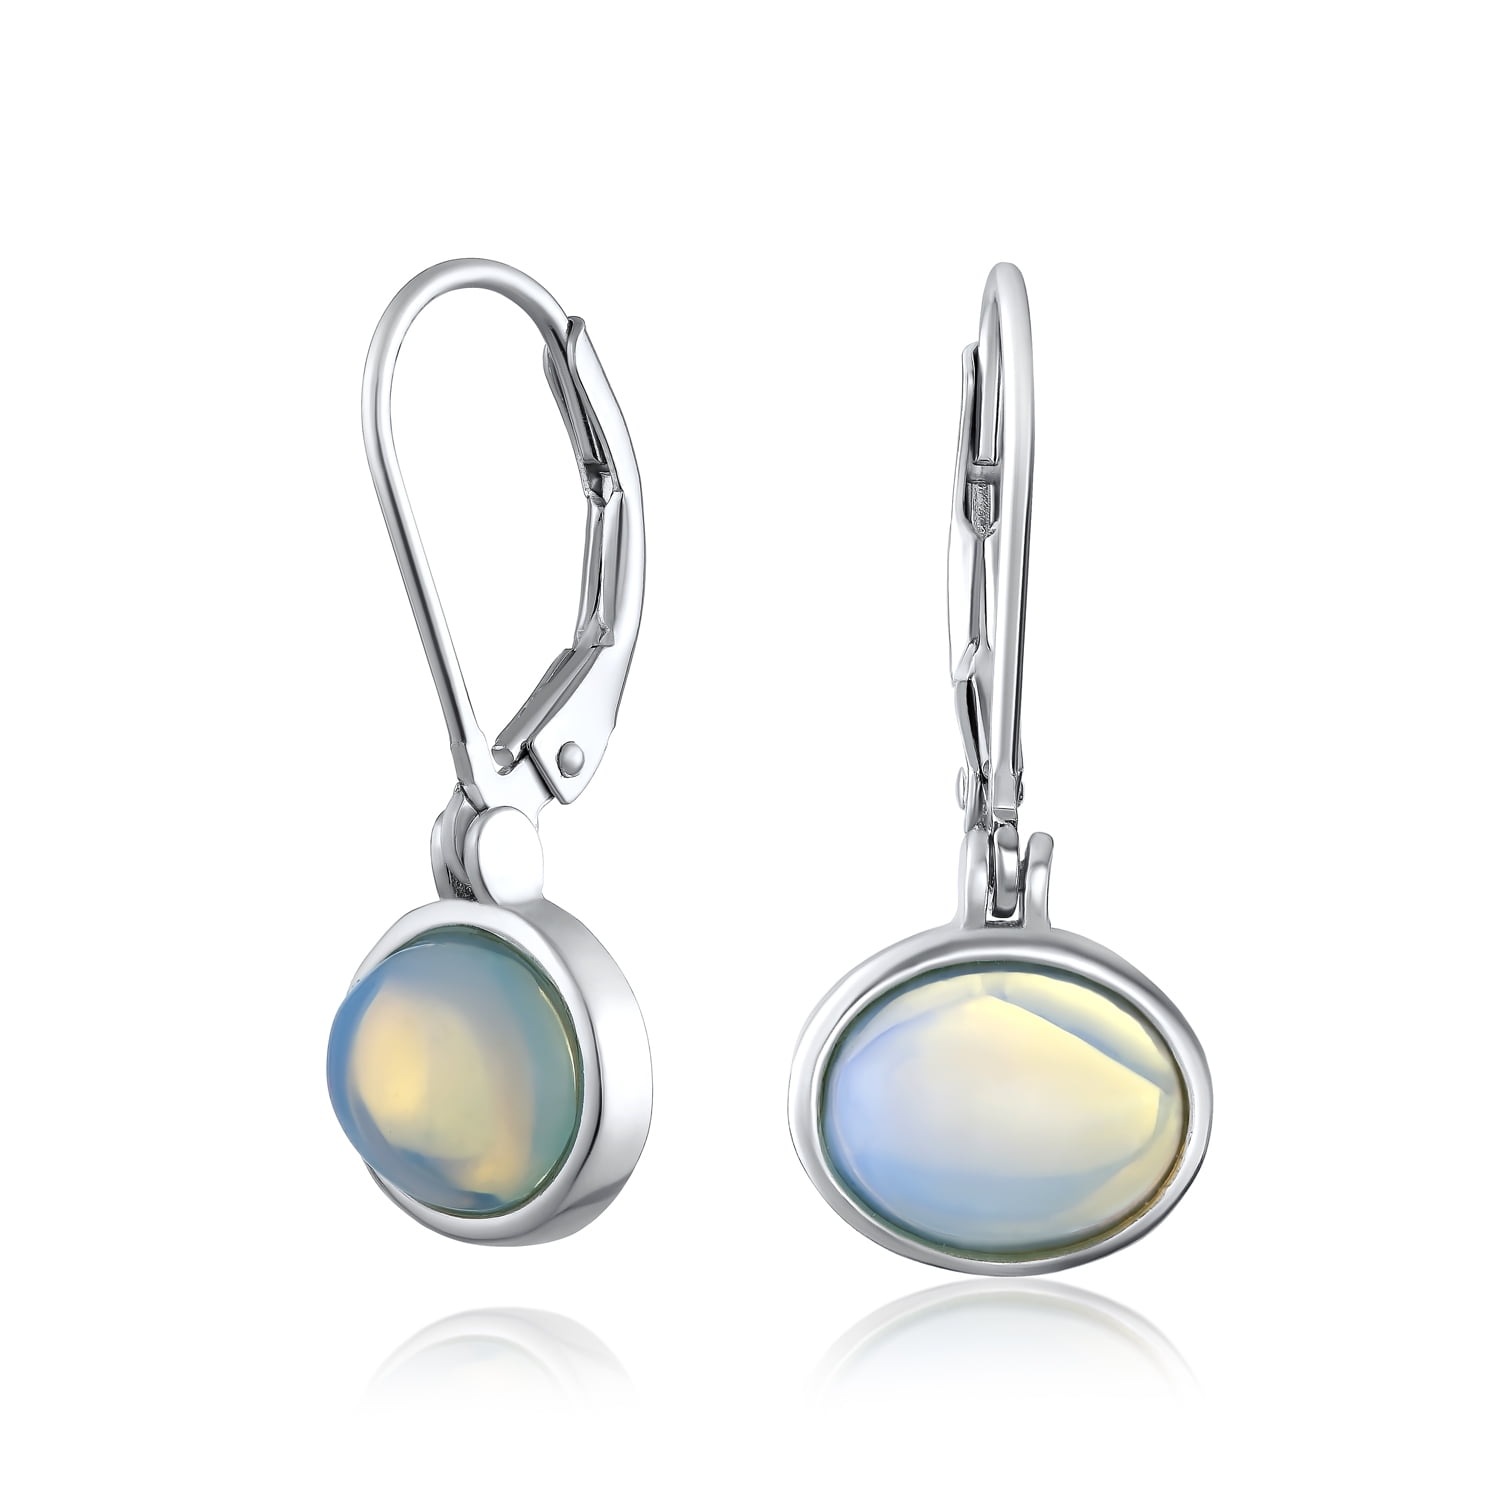 Sterling Silver Rainbow Moonstone Earrings Drop & Dangle Mothers Day Gift Hypoallergenic Earrings For Sensitive Ears Solid 925 Sterling Silver Earrings for Women & Girls Boho Earrings